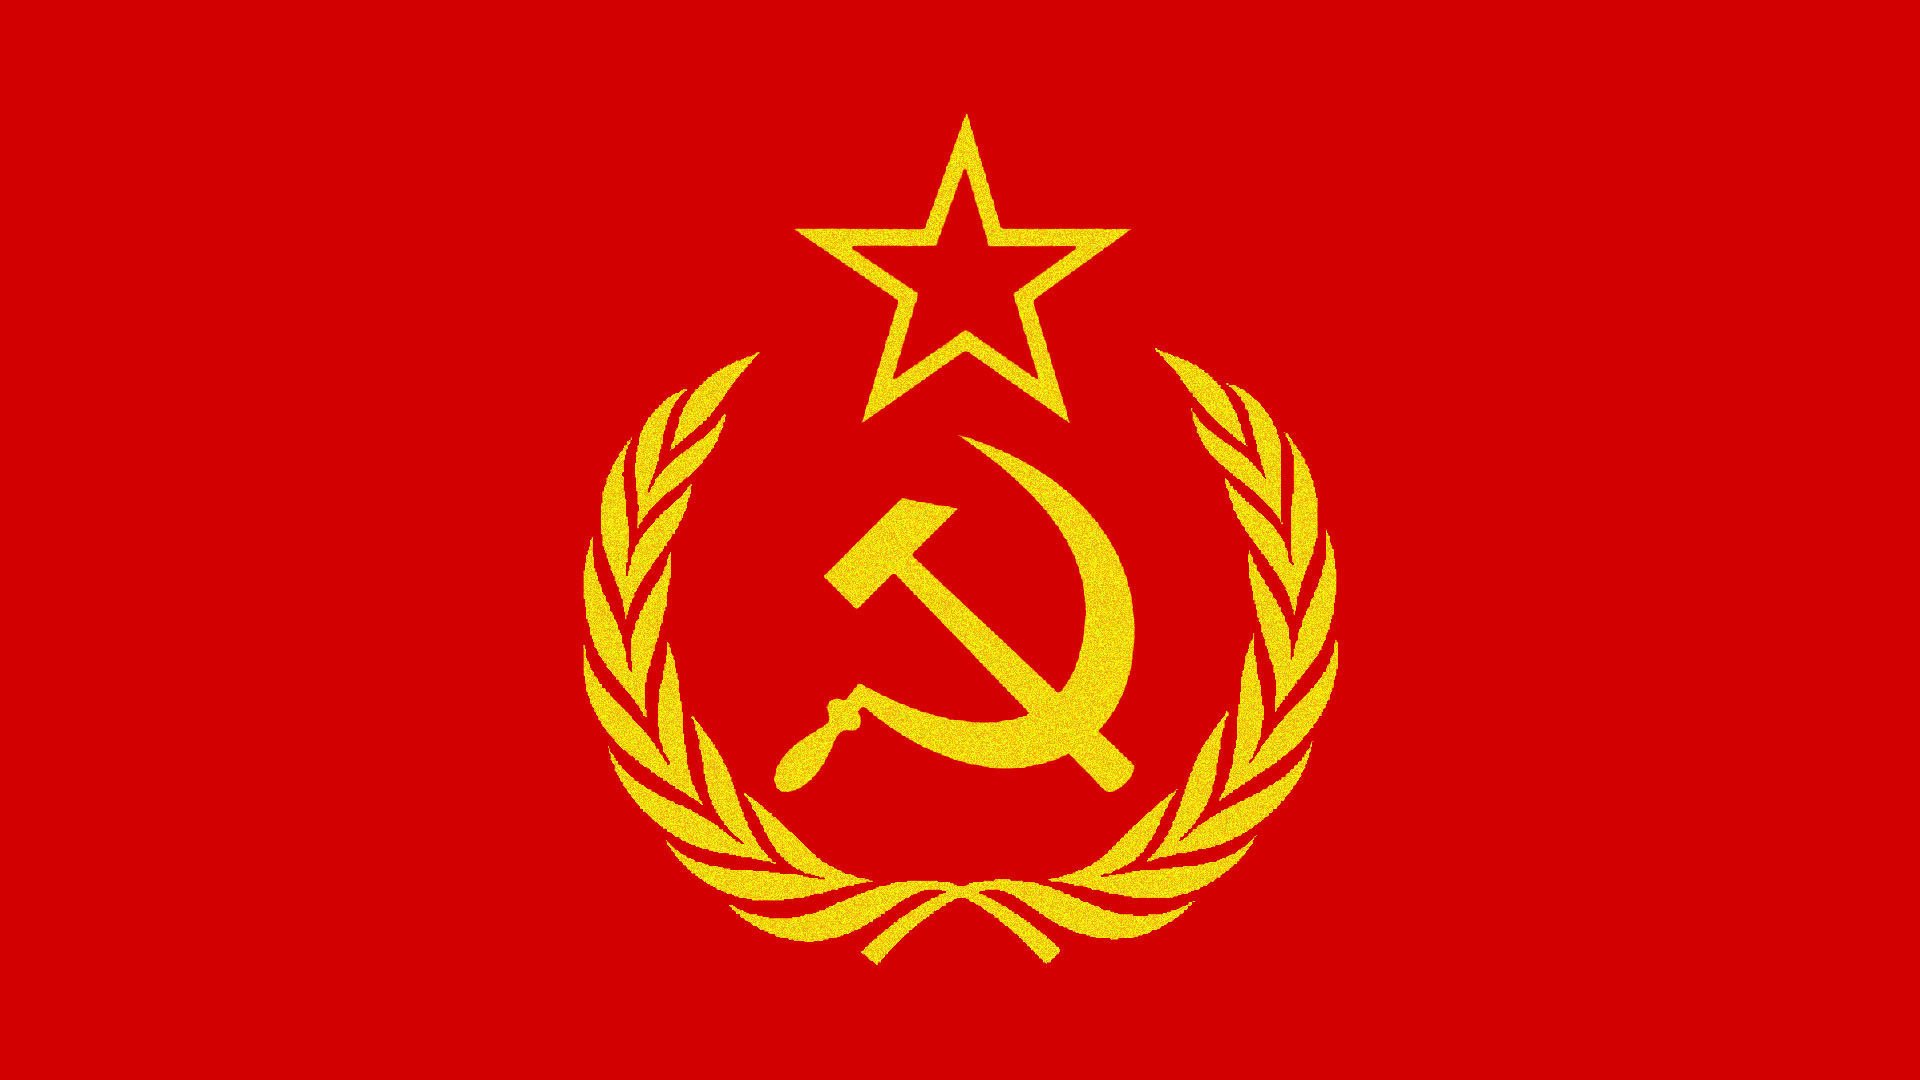 Серп, молот, колосья и звезда на красном флаге